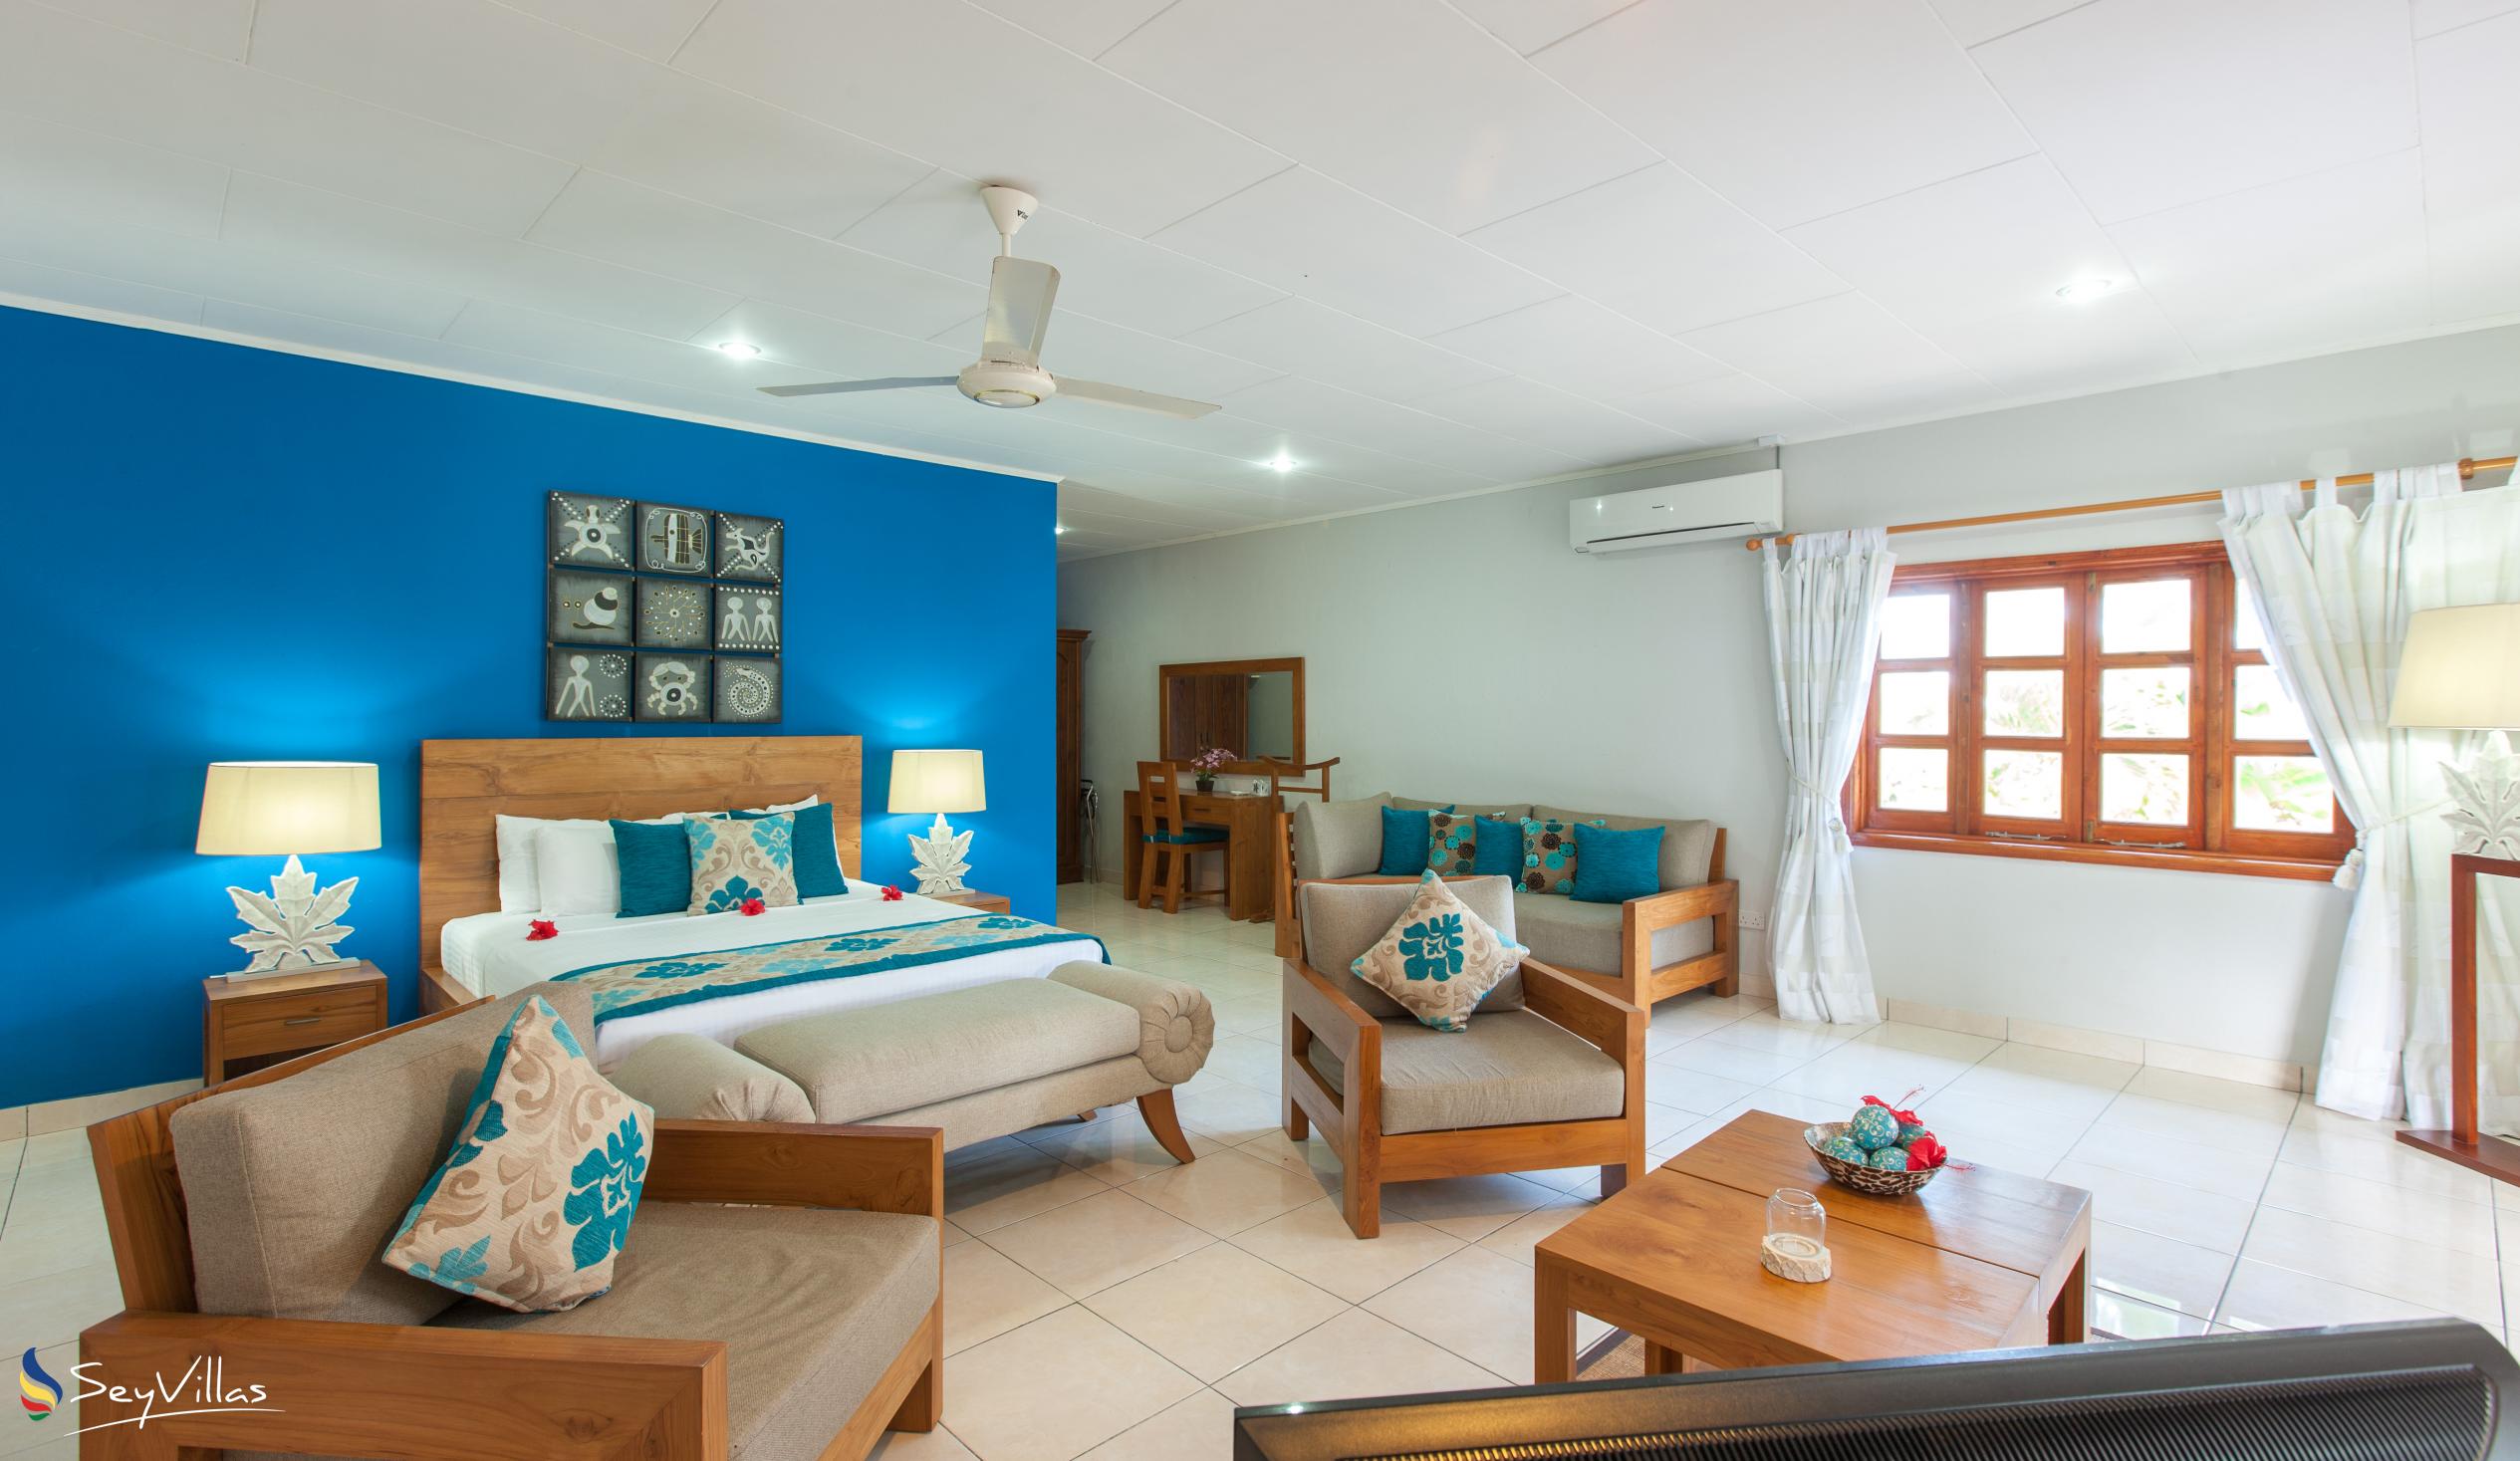 Foto 38: Villas de Mer - Junior Suite - Praslin (Seychelles)